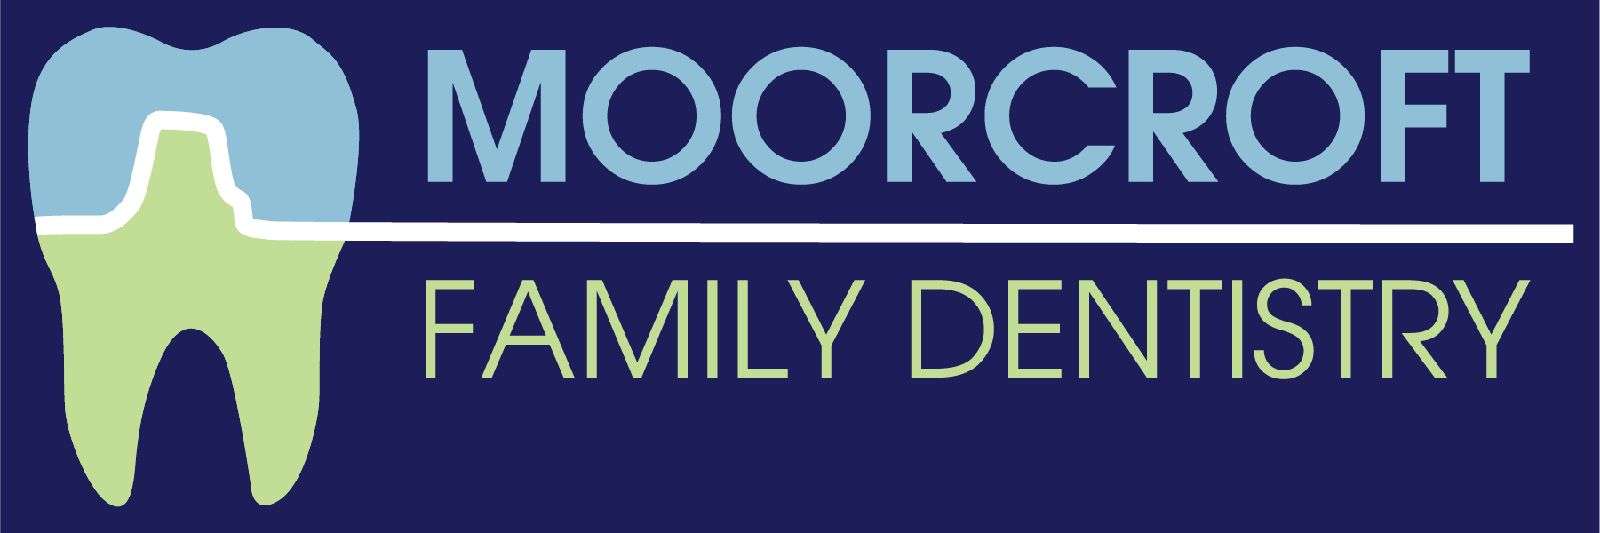 Moorcroft Family Dentistry Slide Image